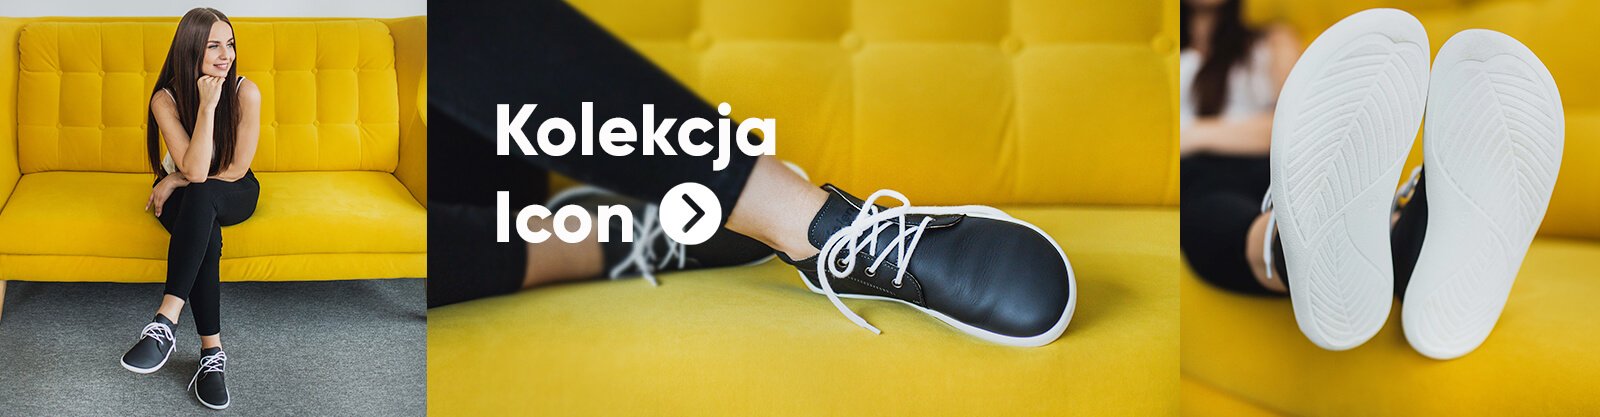 Słowacy robią buty, które łączą Cię z naturą | Be Lenka